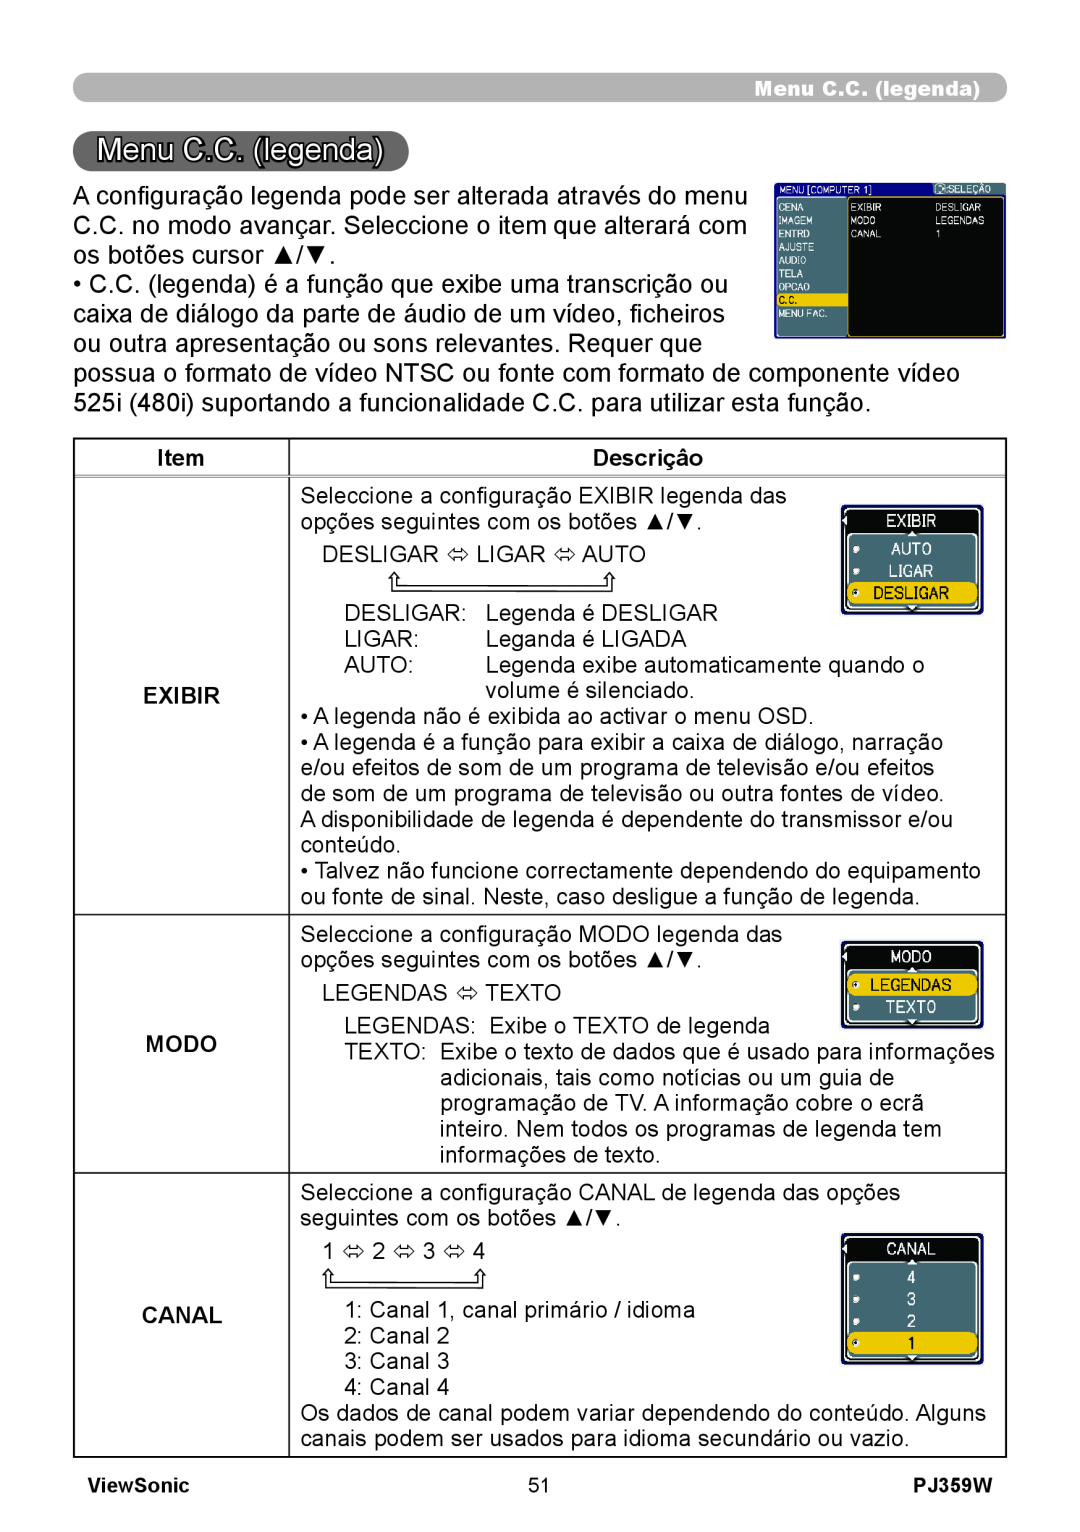 ViewSonic PJ359 manual Menu C.C. legenda 